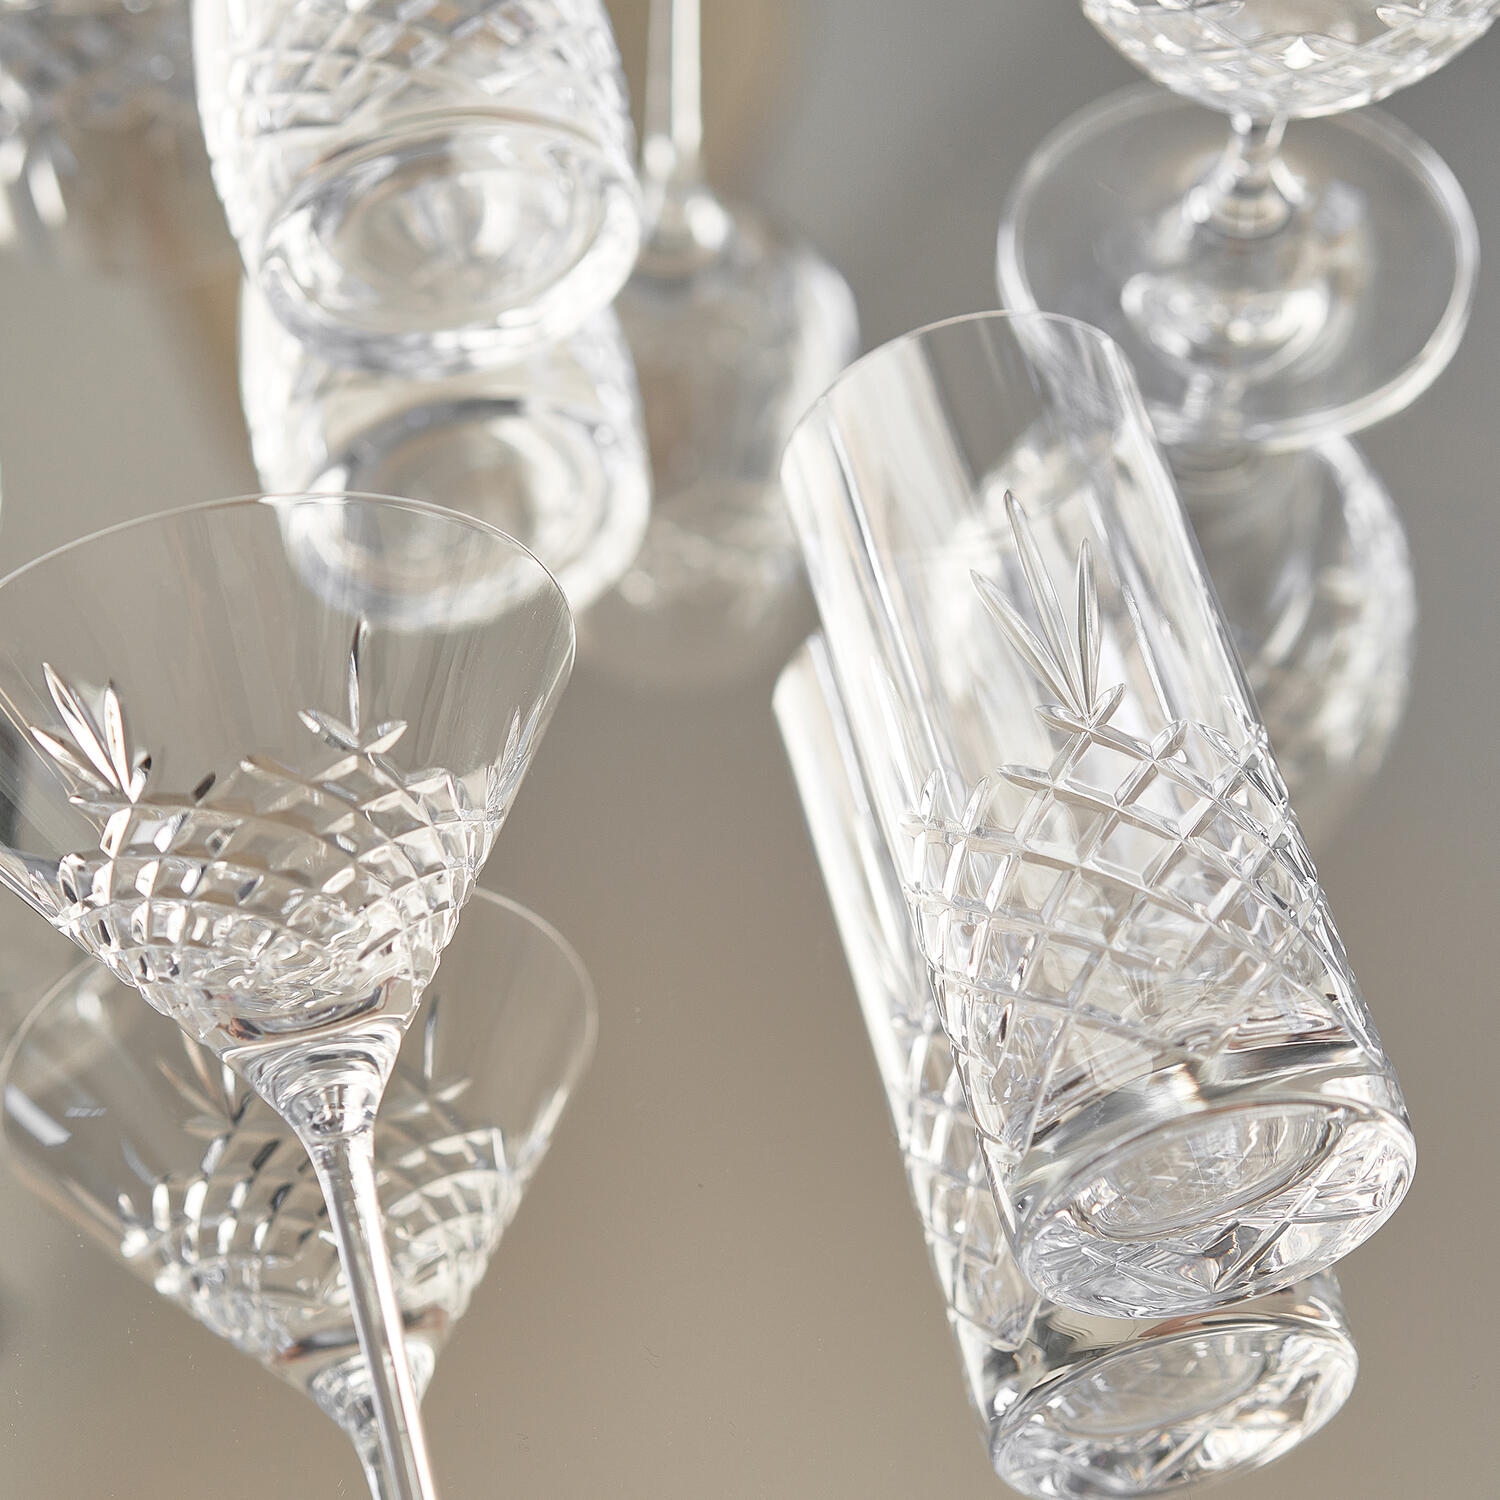 Frederik Bagger Crispy Highball Glass 2 Pcs - Highball Glasses & Longdrink Glasses Crystal Glass Clear - 10311